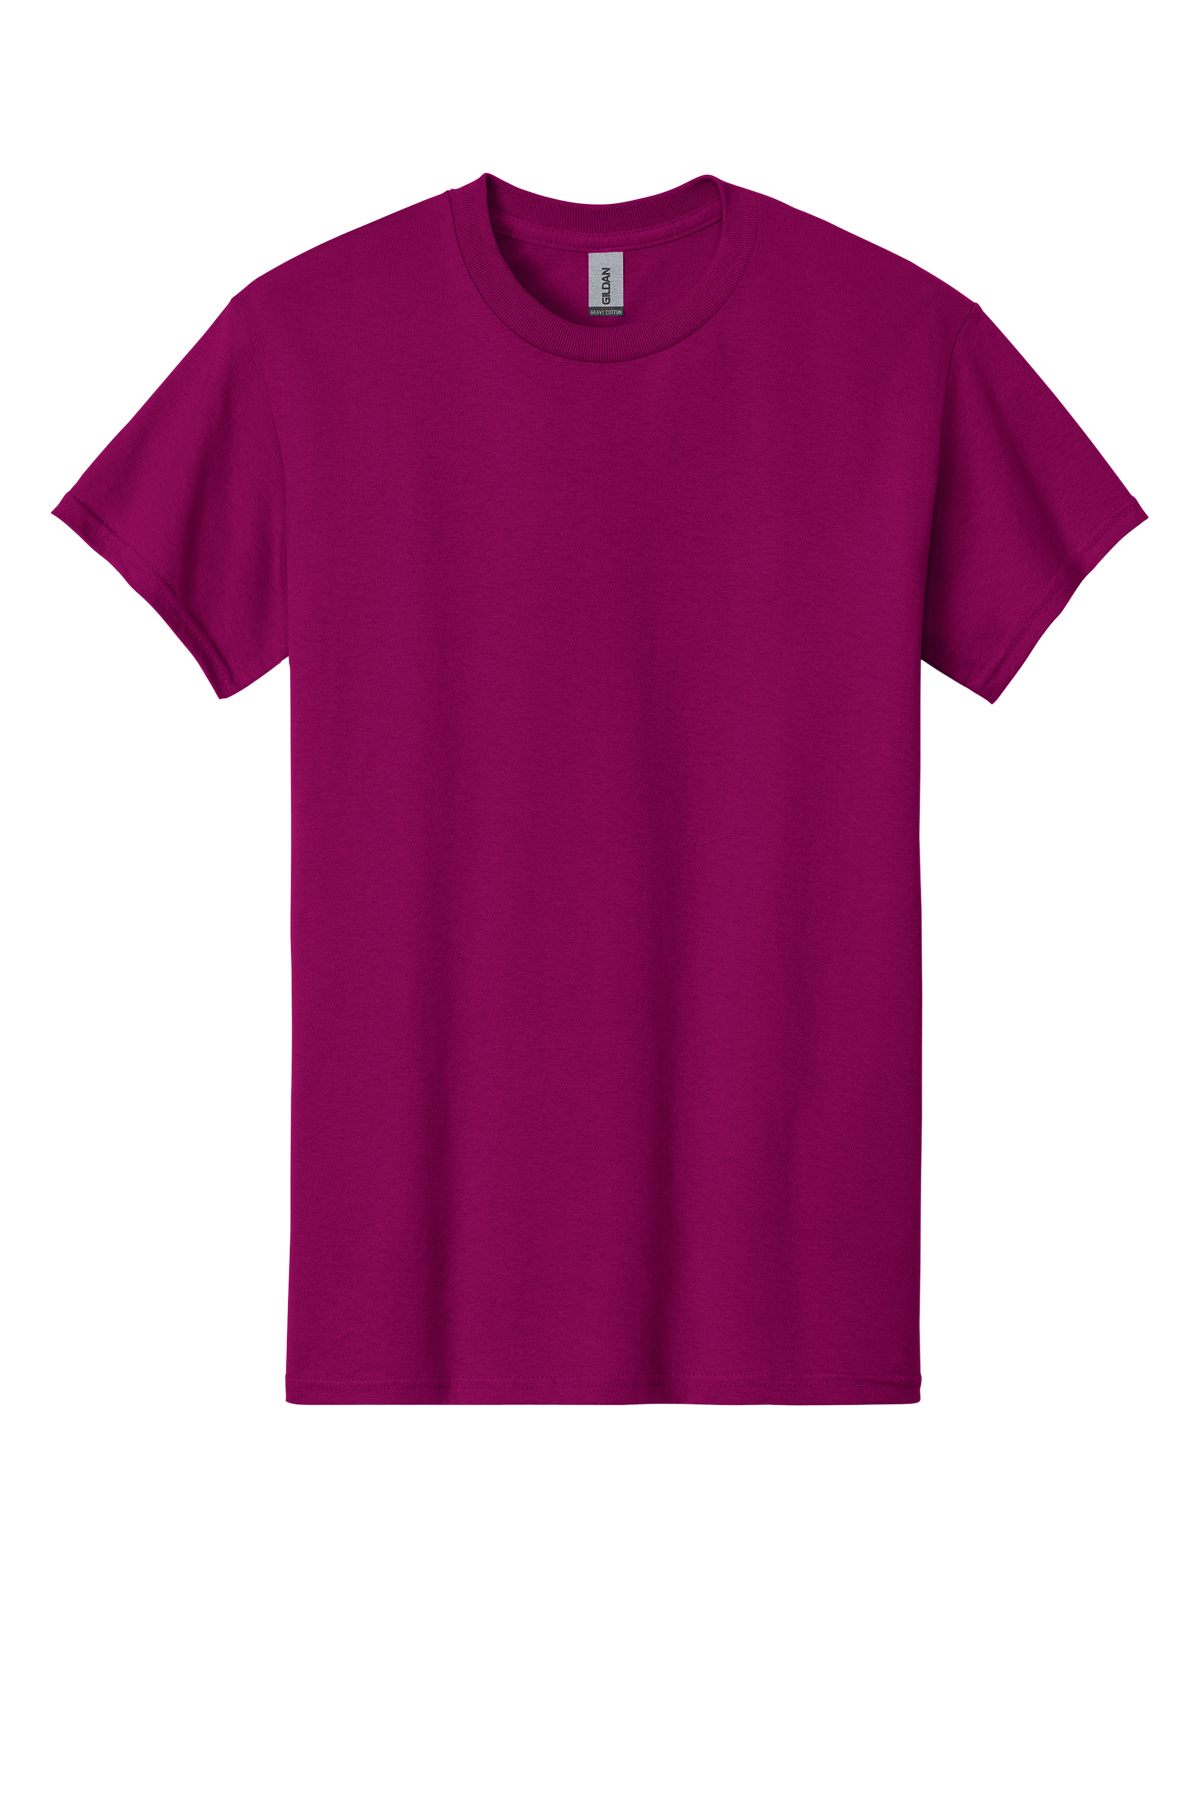 Gildan - Heavy Cotton | SanMar Product Cotton T-Shirt | 100